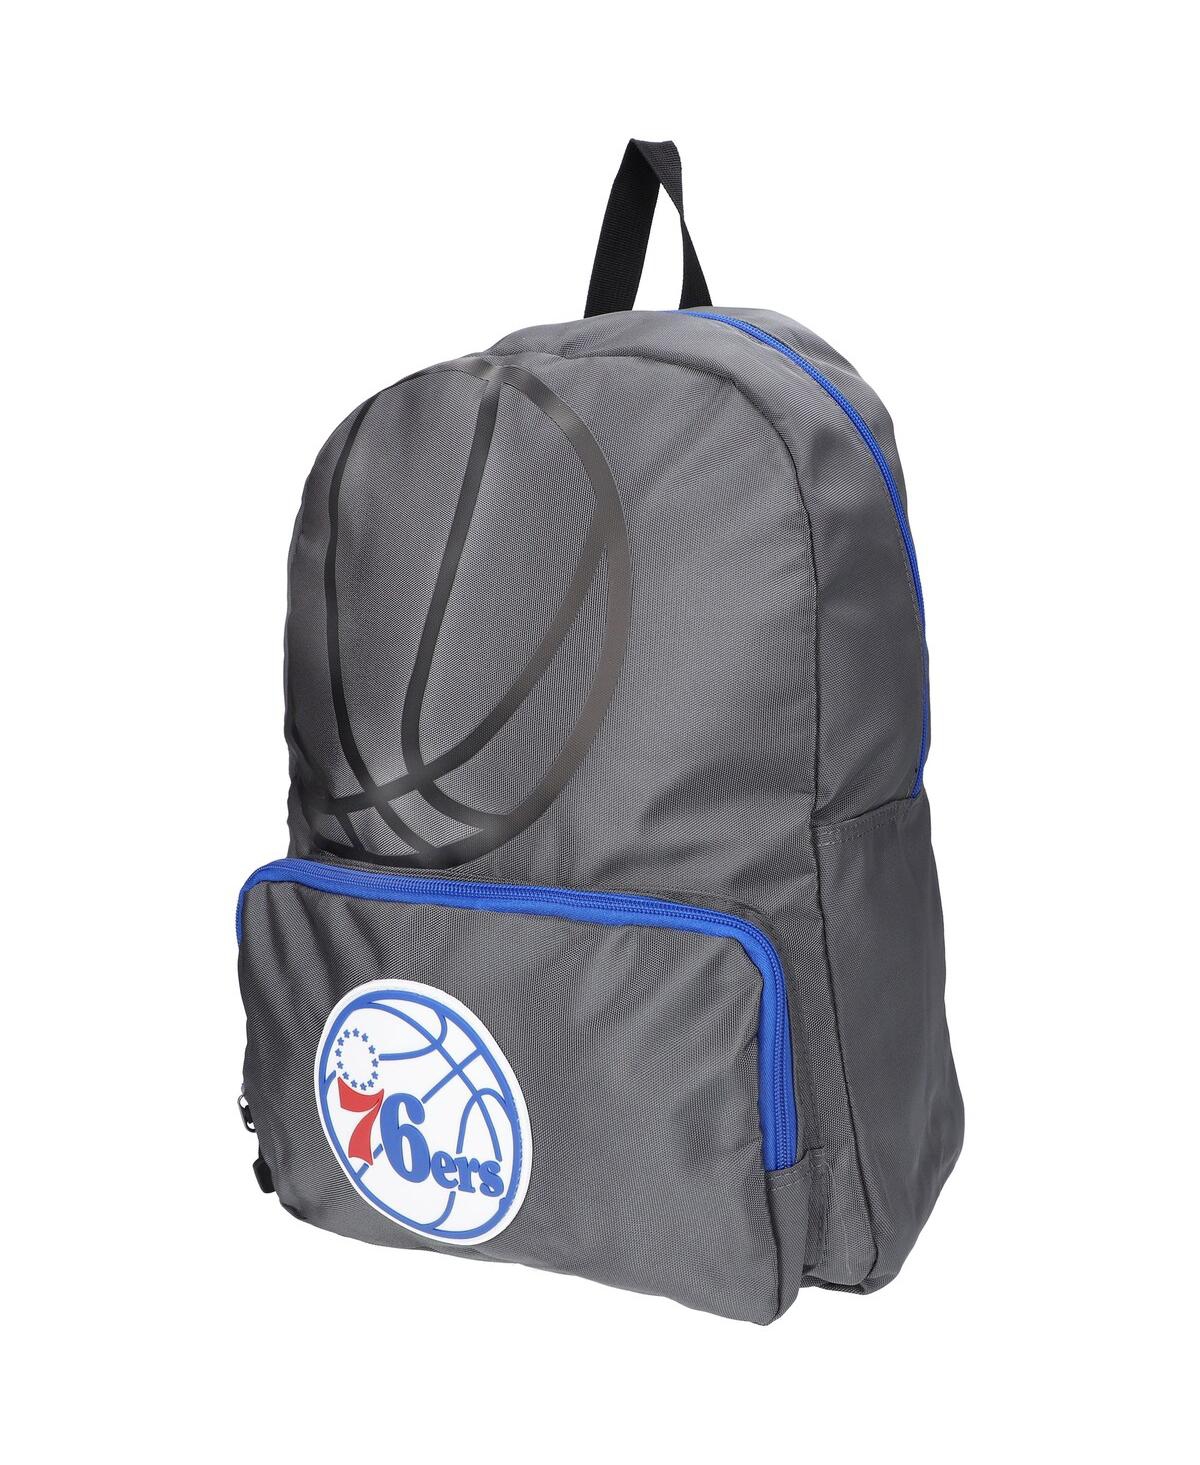 Men's and Women's Fisll Gray Philadelphia 76ers Backpack - Gray